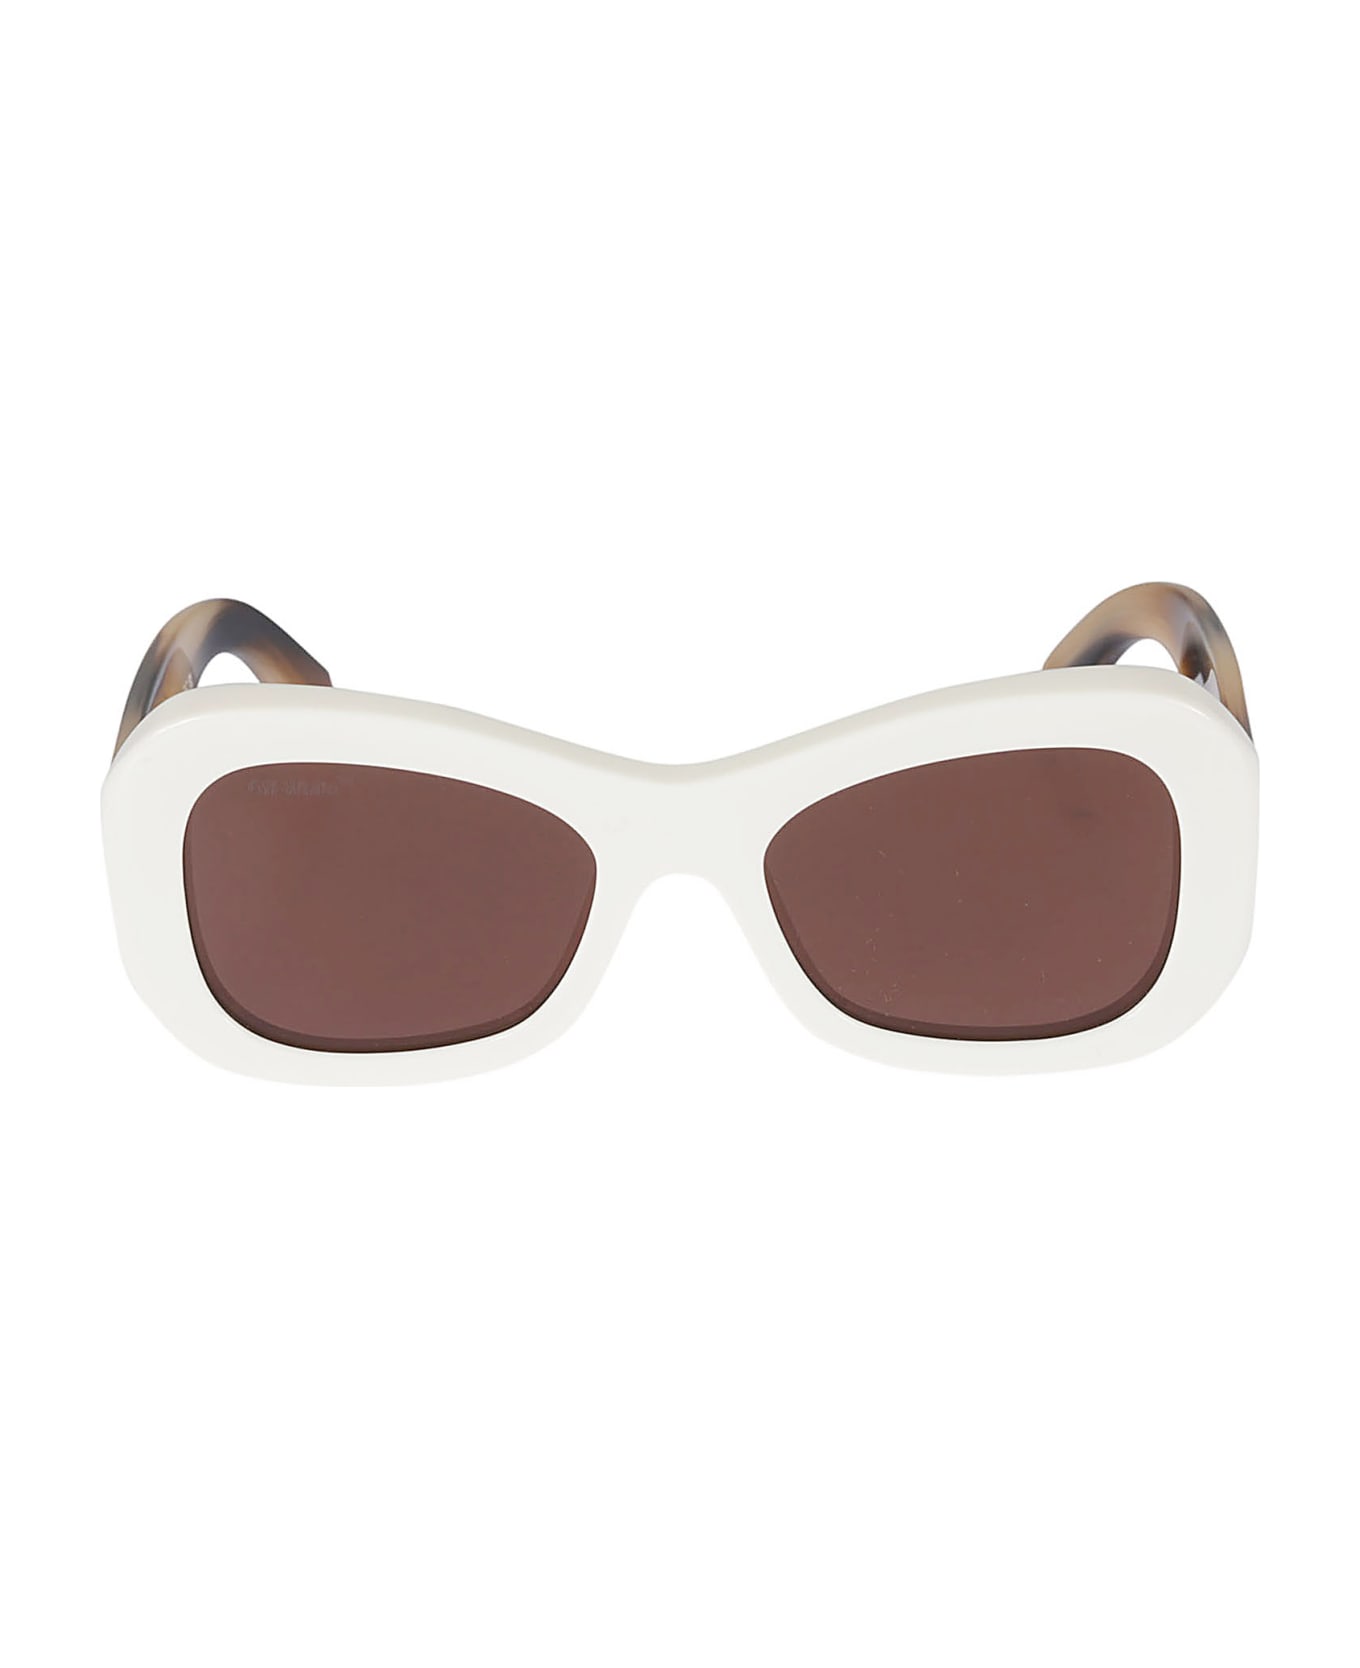 Off-White Pablo Sunglasses - White